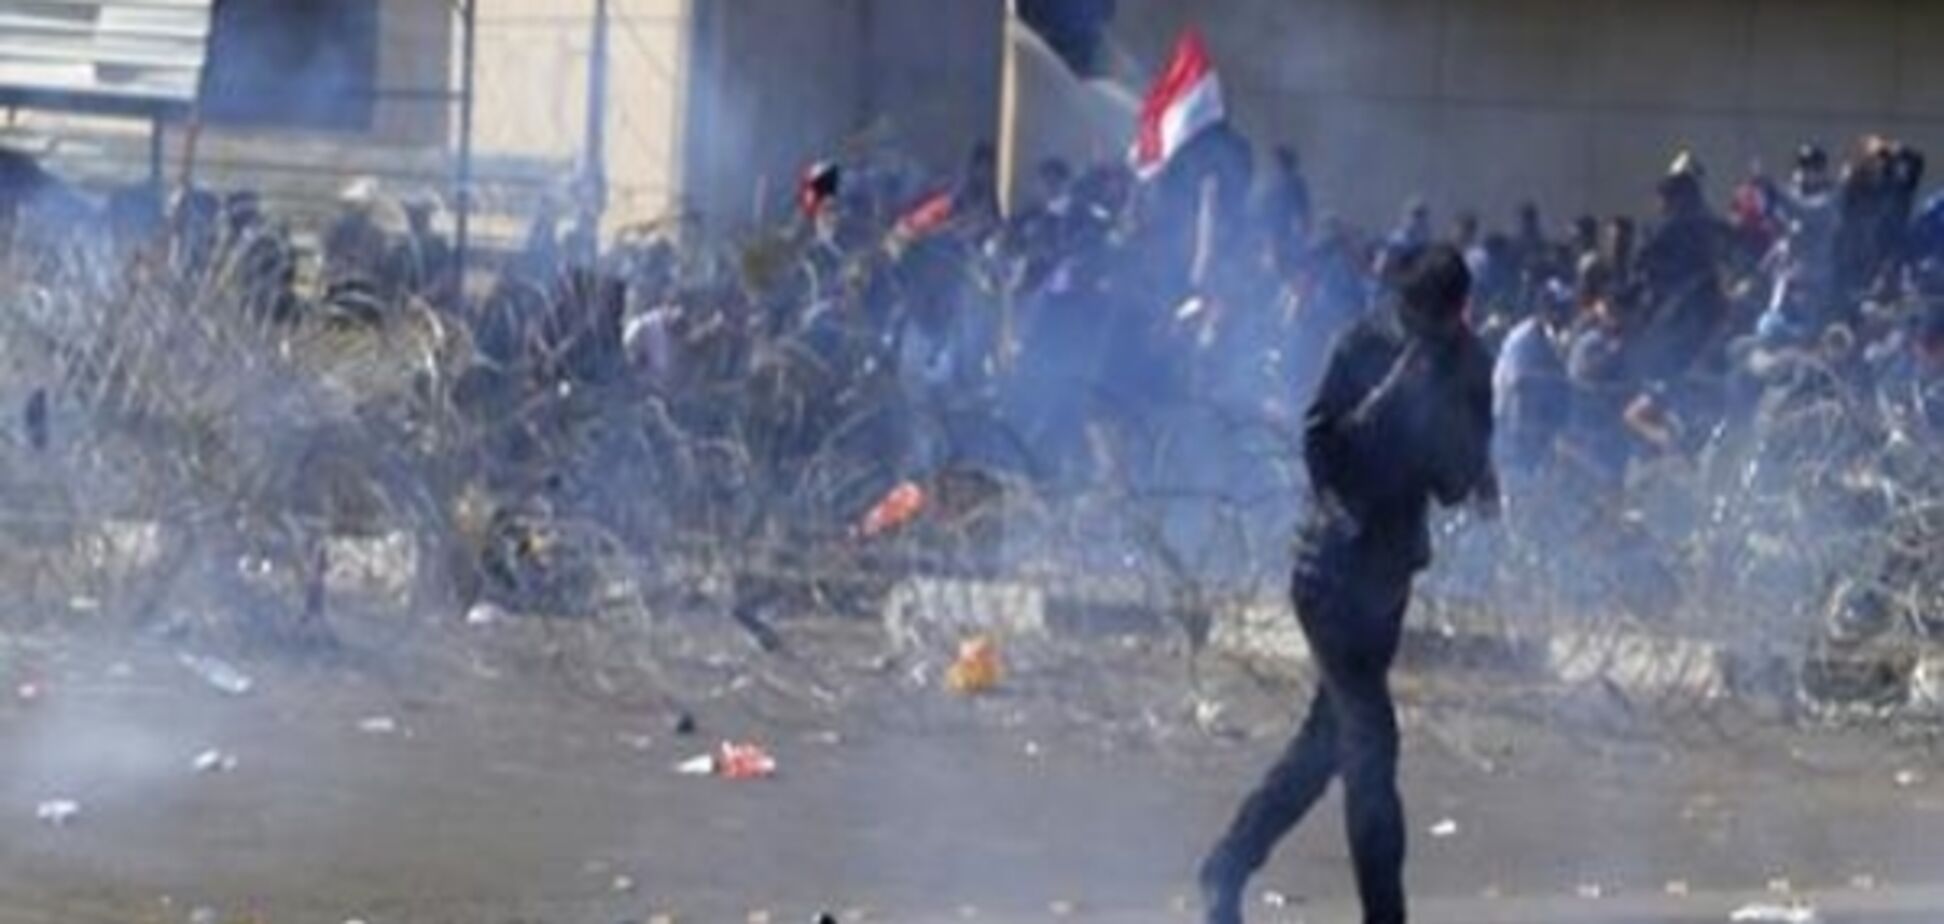 Багдад: загиблі та поранені під час протестів